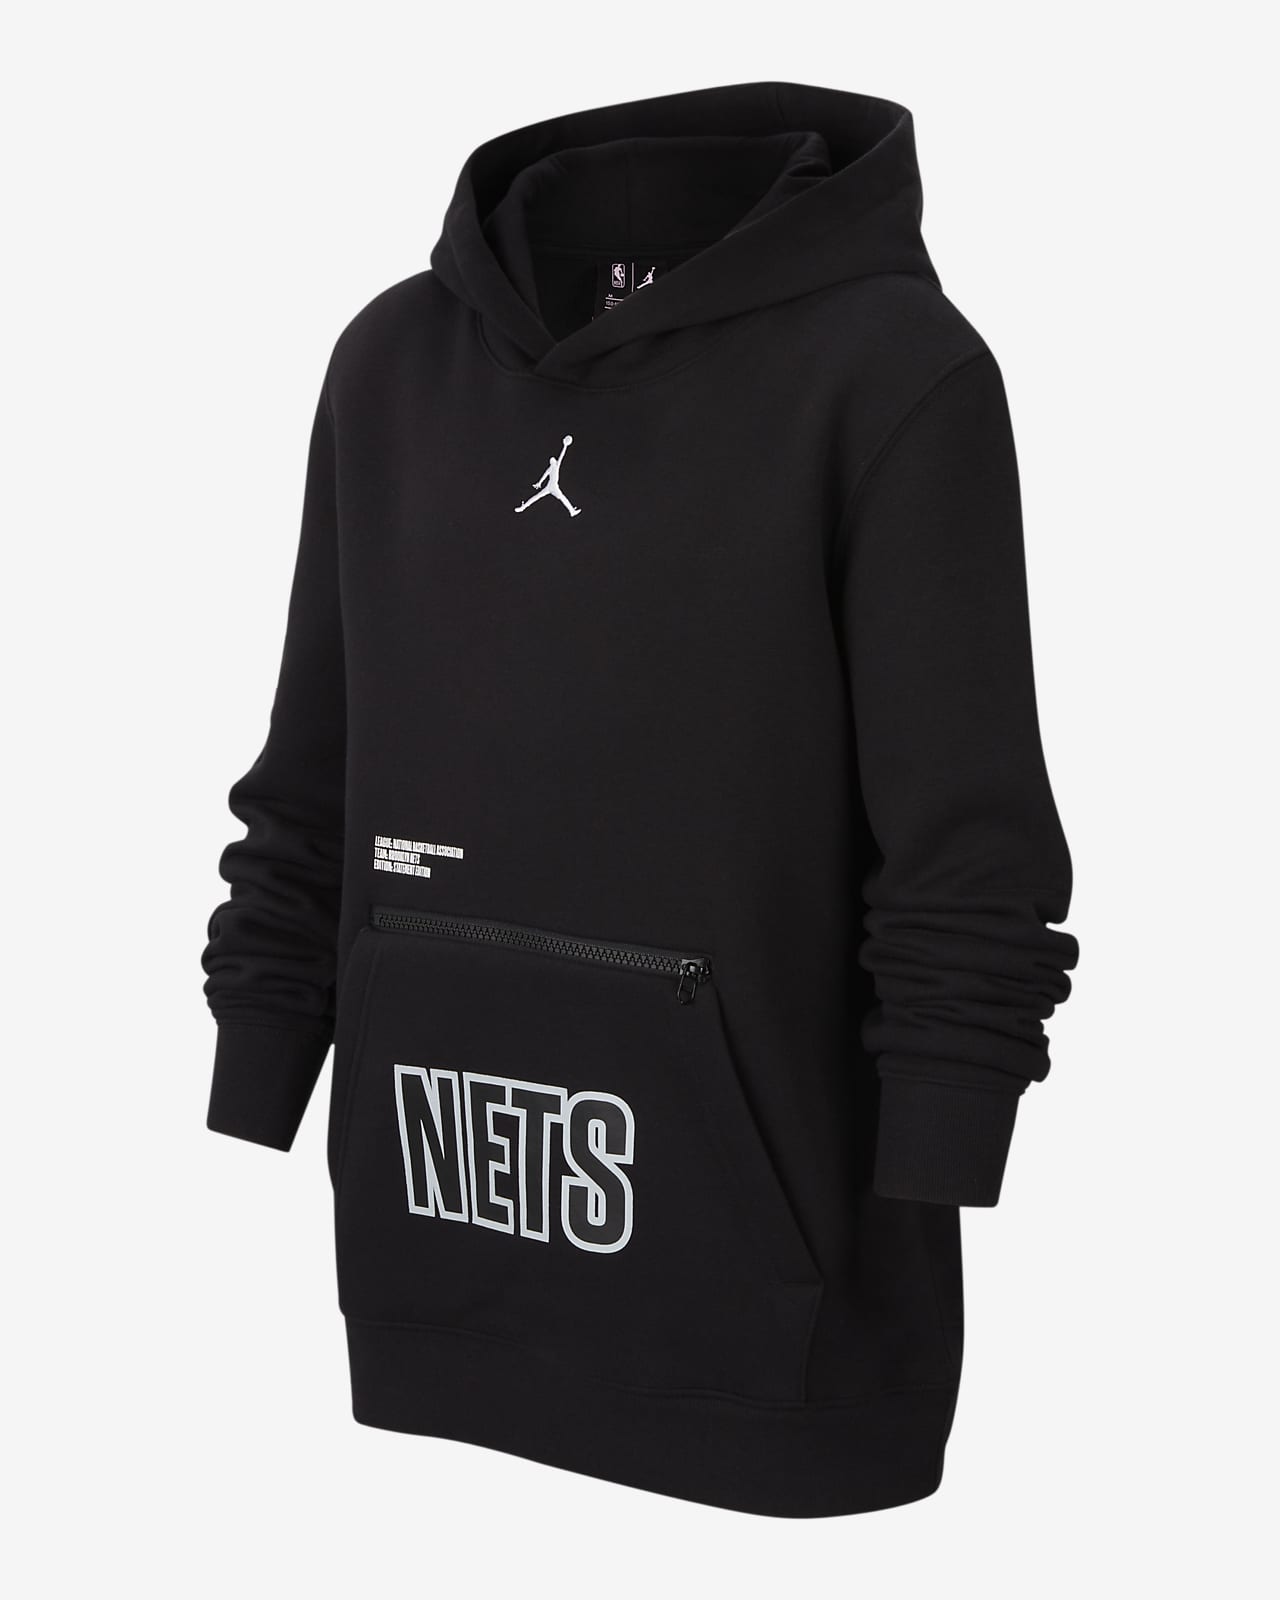 nets statement hoodie